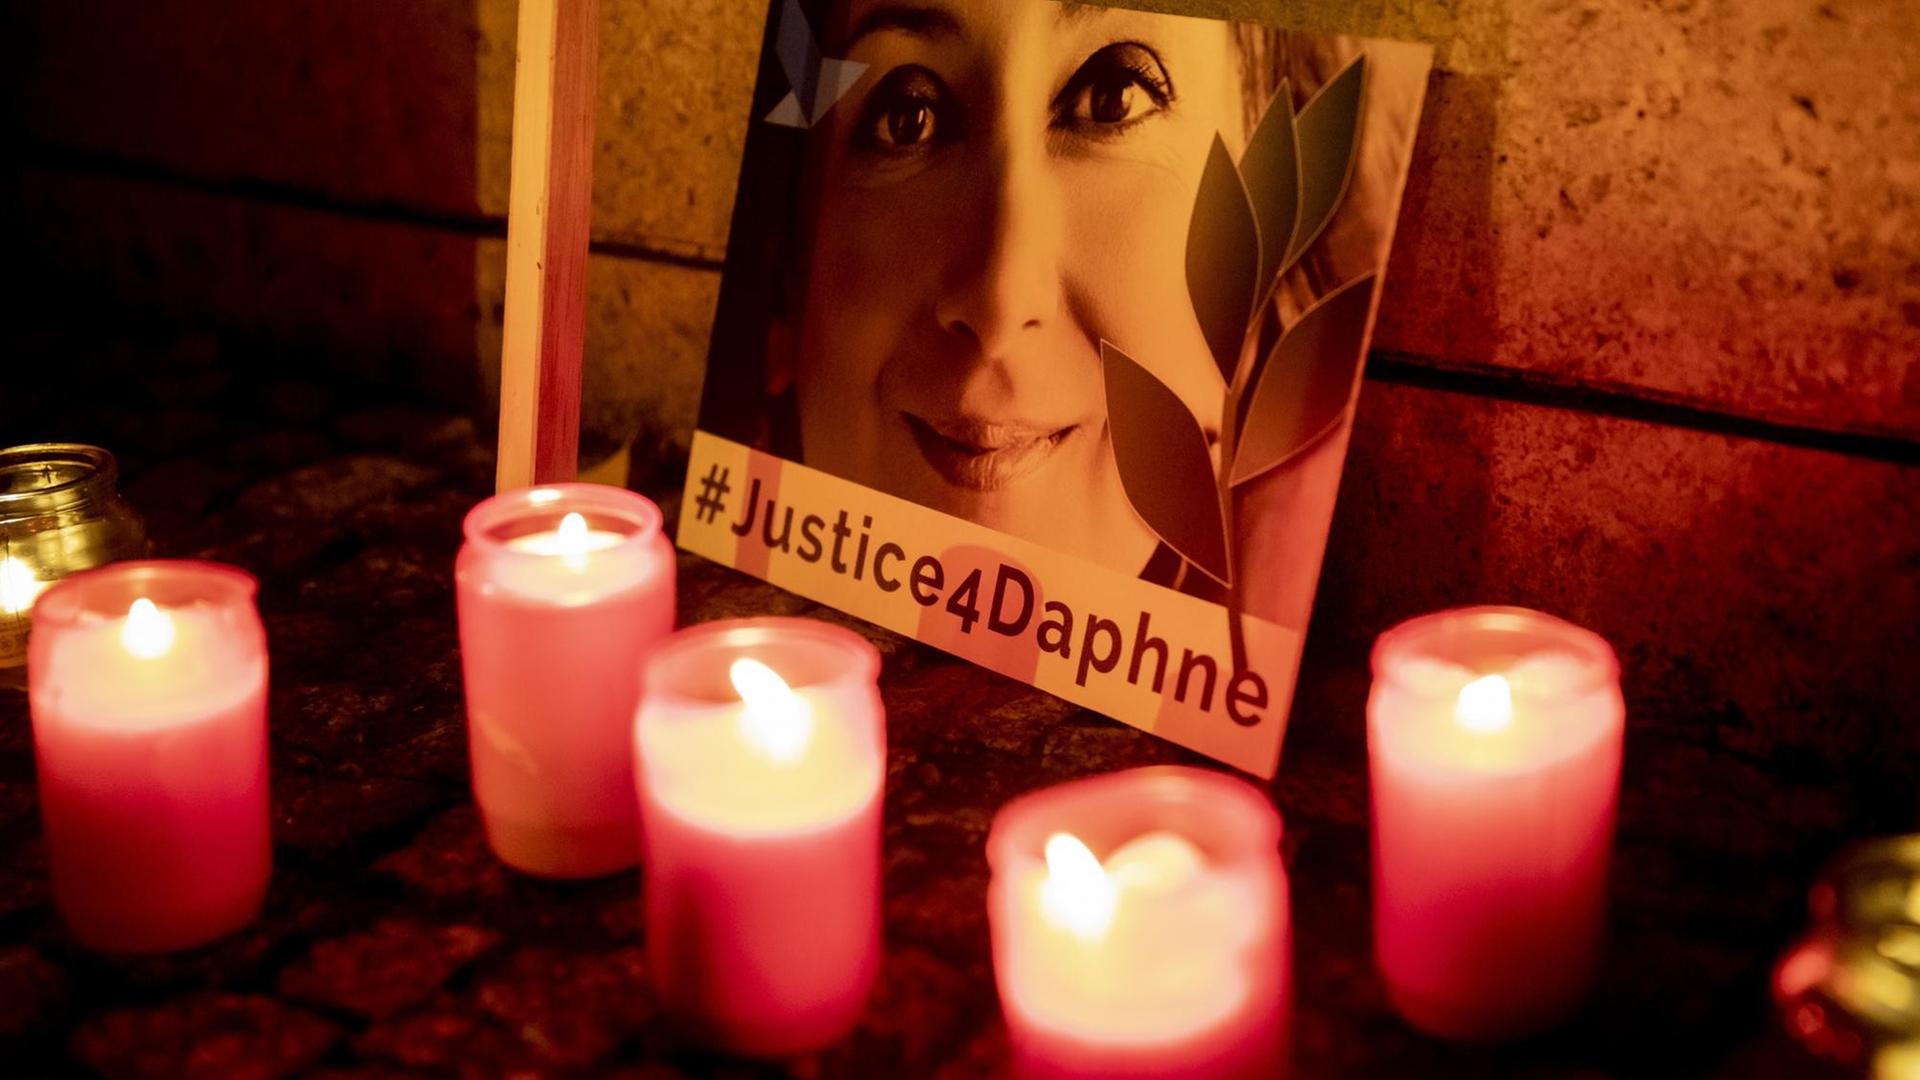 Mehrere Grabkerzen stehen vor einem Bild der maltesischen Investigativjournalistin Daphne Caruana Galizia. Darauf die Aufschrift: #Justice4Daphne.